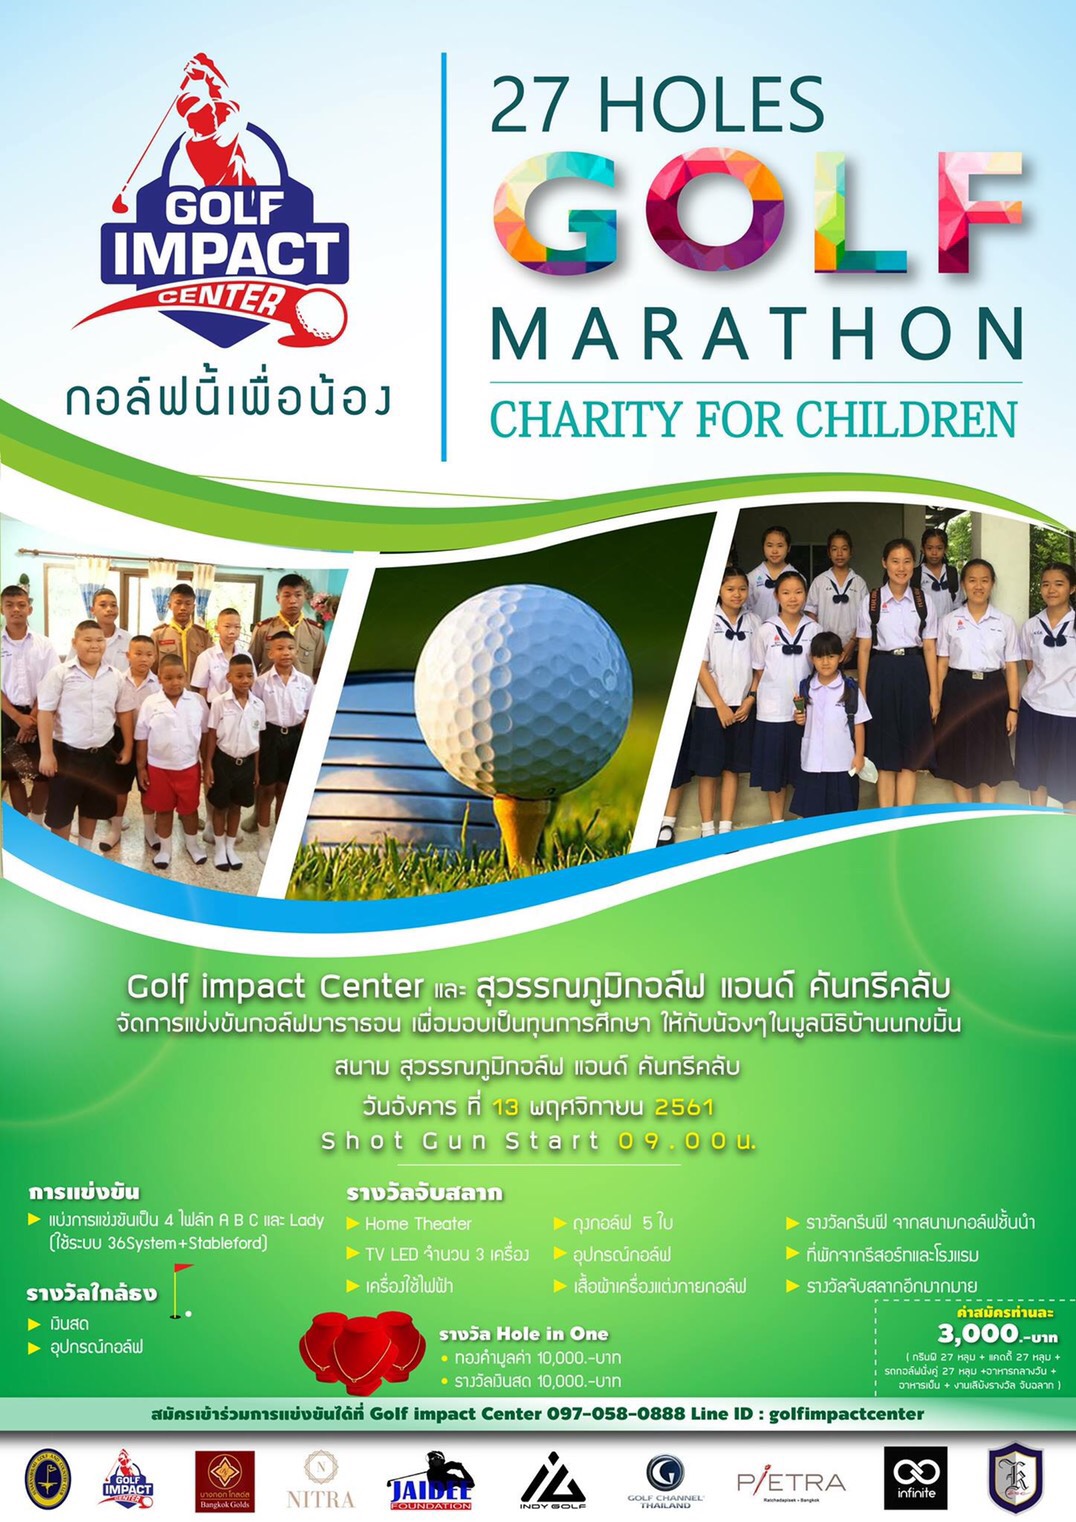 Marathon charity for children event.